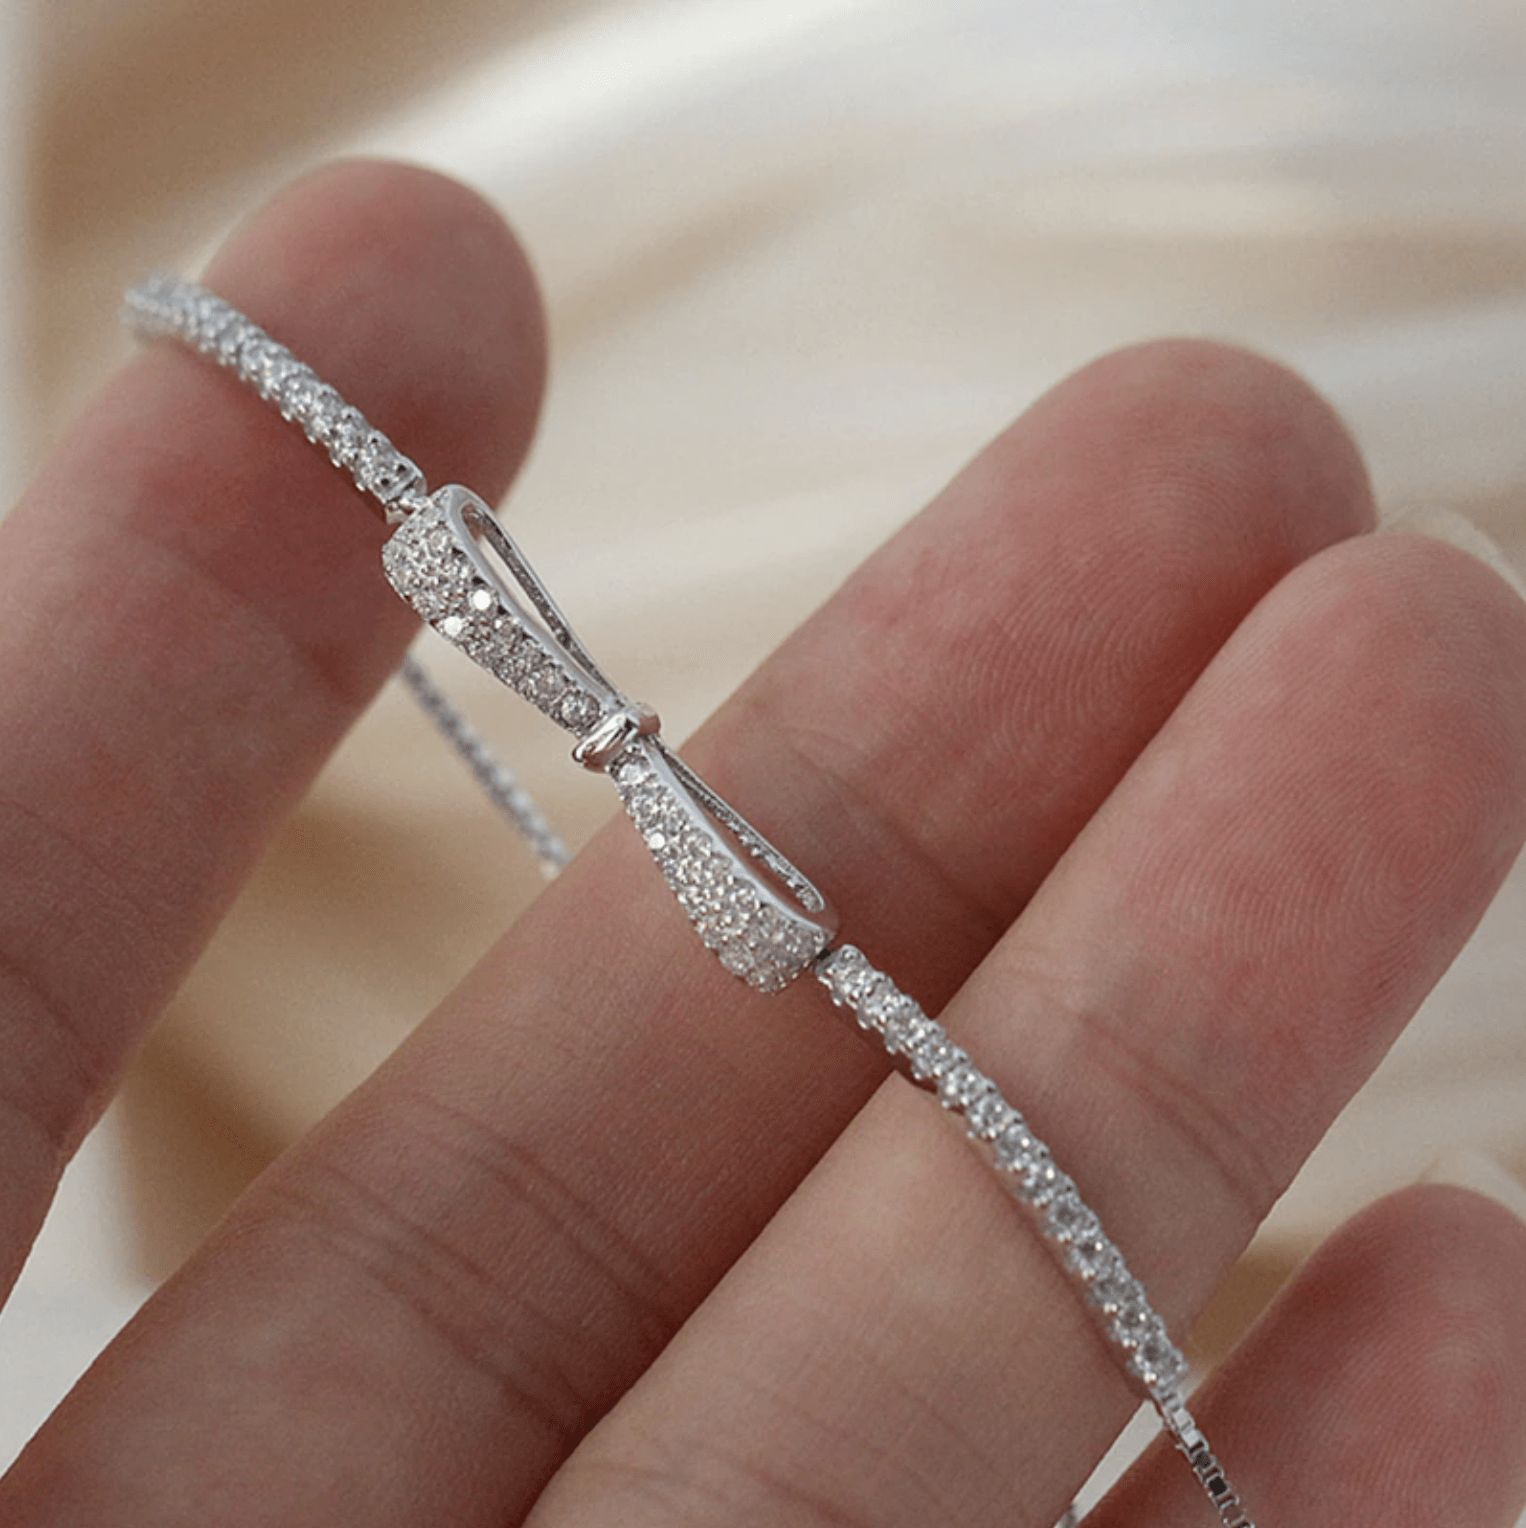 The Zoey Bow Knot Bracelet - I Spy Jewelry